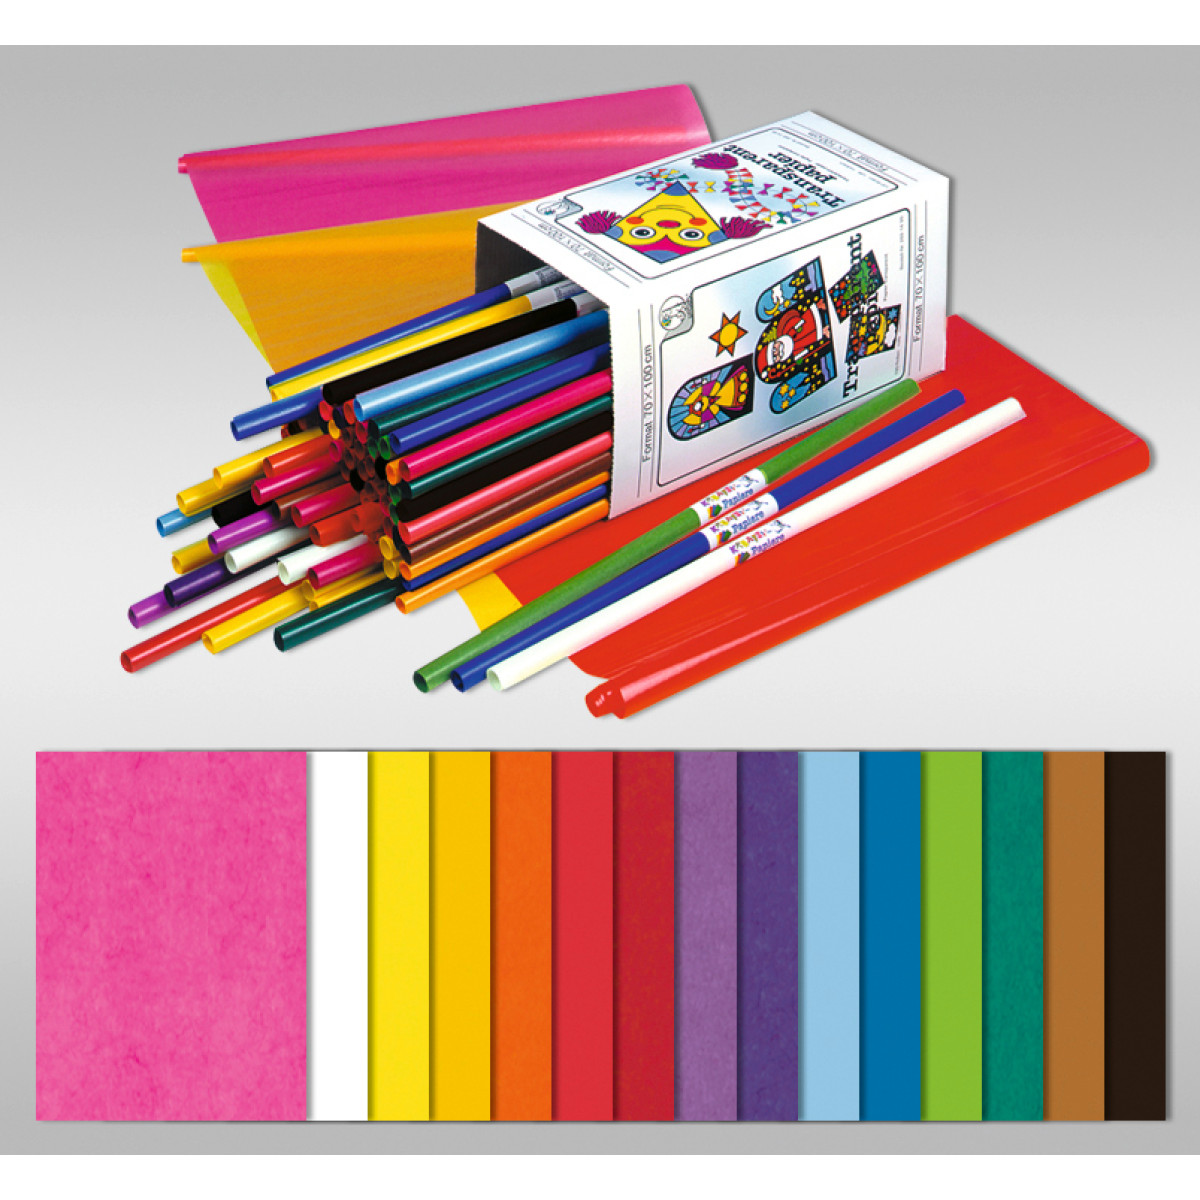 farbig - Drachenpapier MarpaJansen Transparentpapier 42 g/m² - violett 70 x 100 cm, gefalzt auf 50 x 70 cm, 10 Bogen